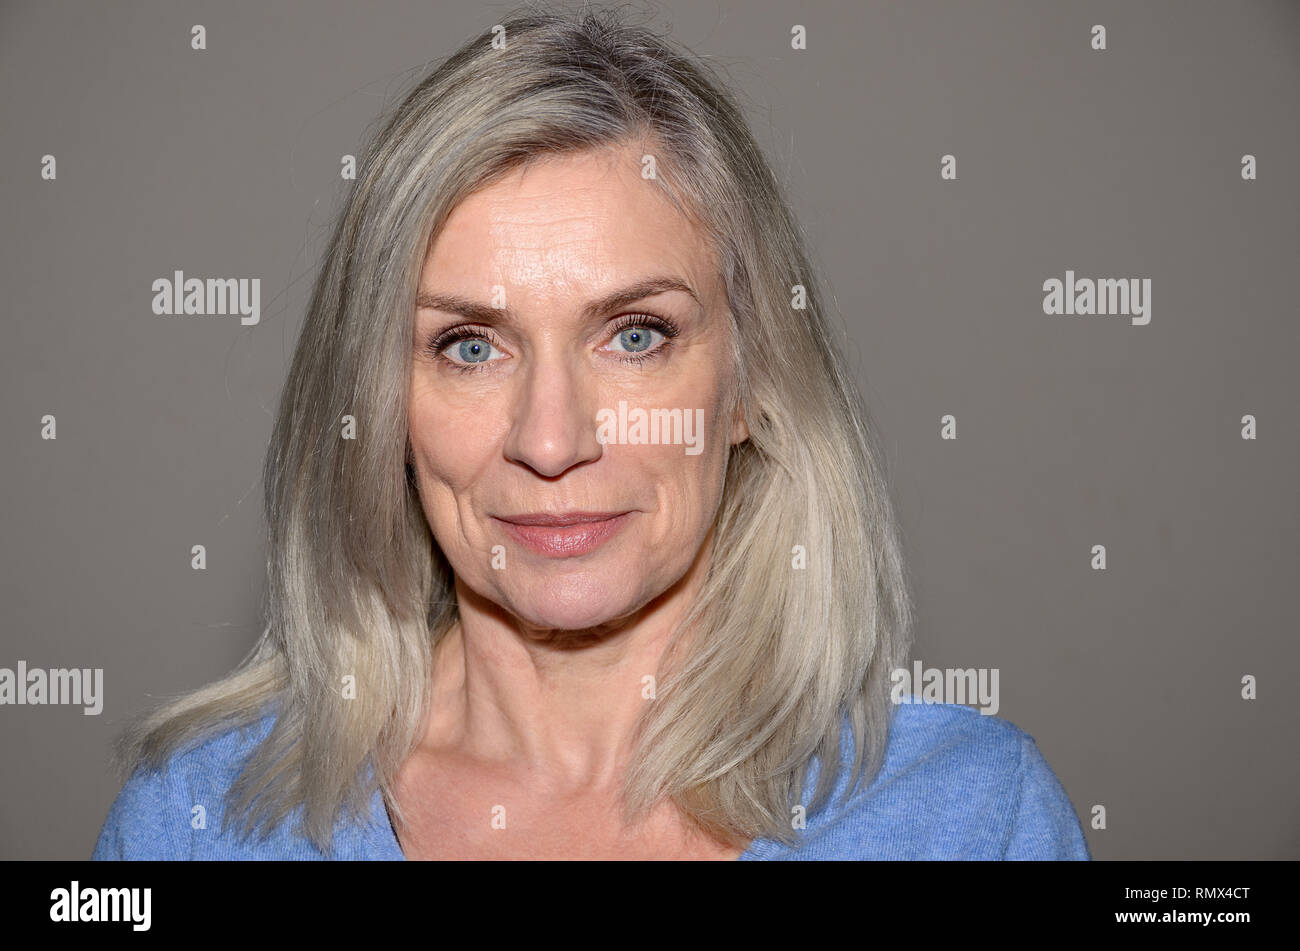 Attraktive blue-eyed blonde Frau mittleren Alters mit einem süßen Lächeln und schulterlanges Haar an Kamera suchen Stockfoto